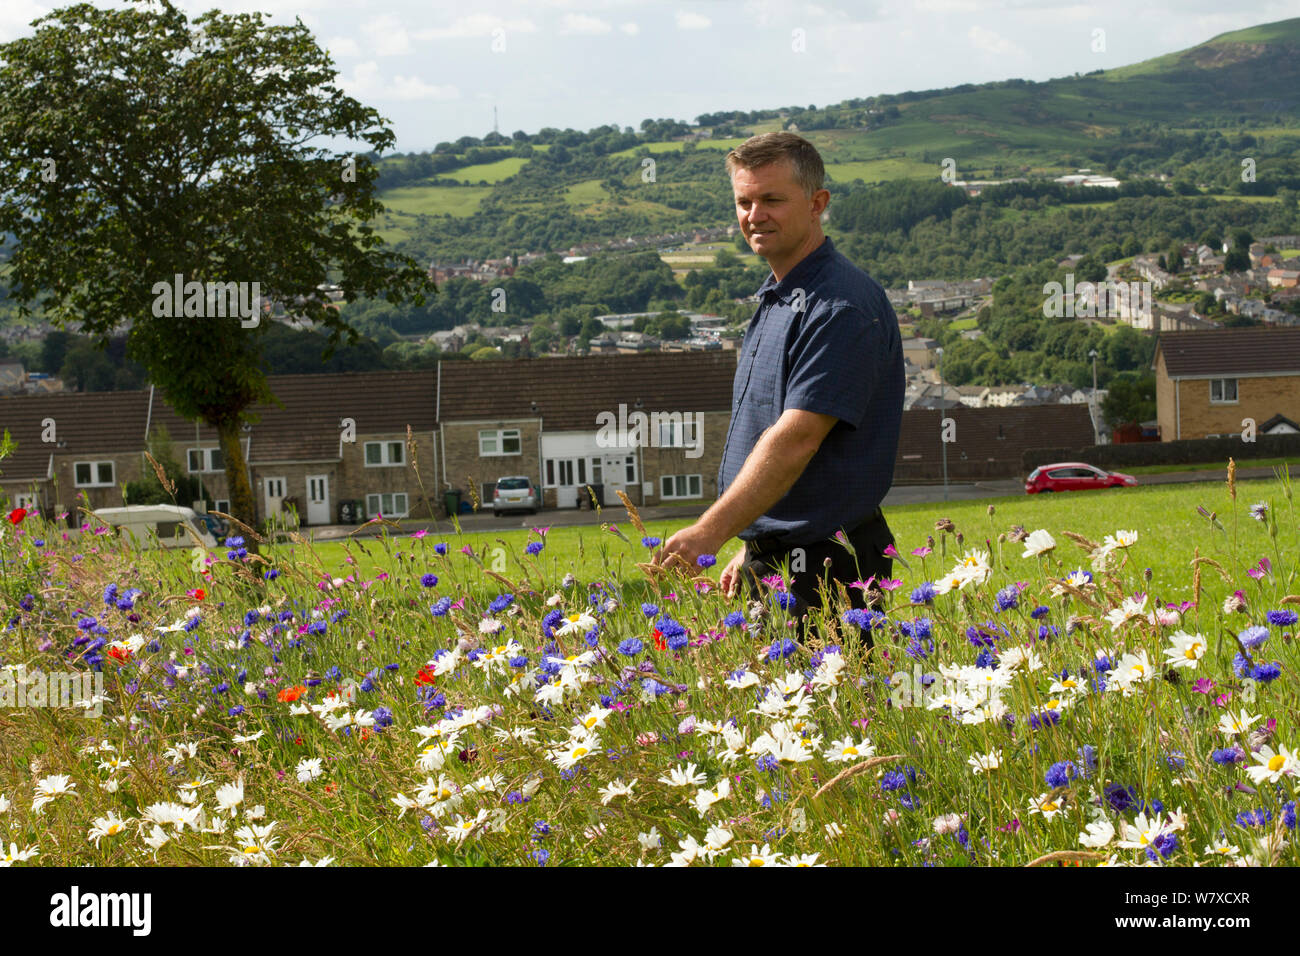 Steve Caddy, Operations Manager von &#39; Greenspace&#39;, an Wildblumen suchen gepflanzt Bienen anzulocken als Teil der Freunde der Erde&#39; Biene Freundlich &#39; Projekt durchgeführt mit der Bron Afon Community Housing Association. In der Nähe von Cwmbran, South Wales, UK. Juli 2014. Stockfoto